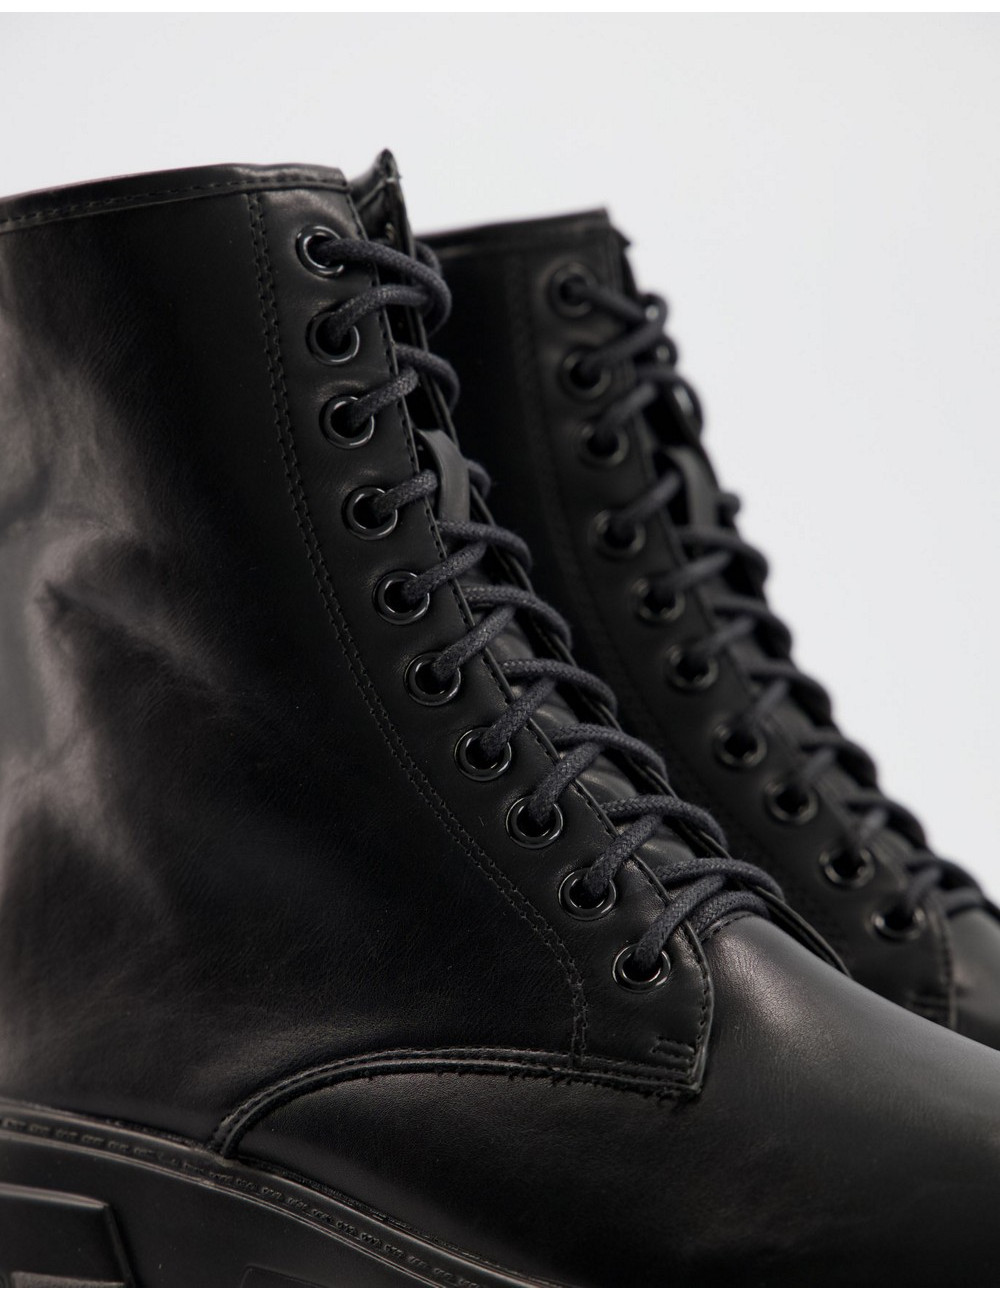 Pimkie chunky boot in black